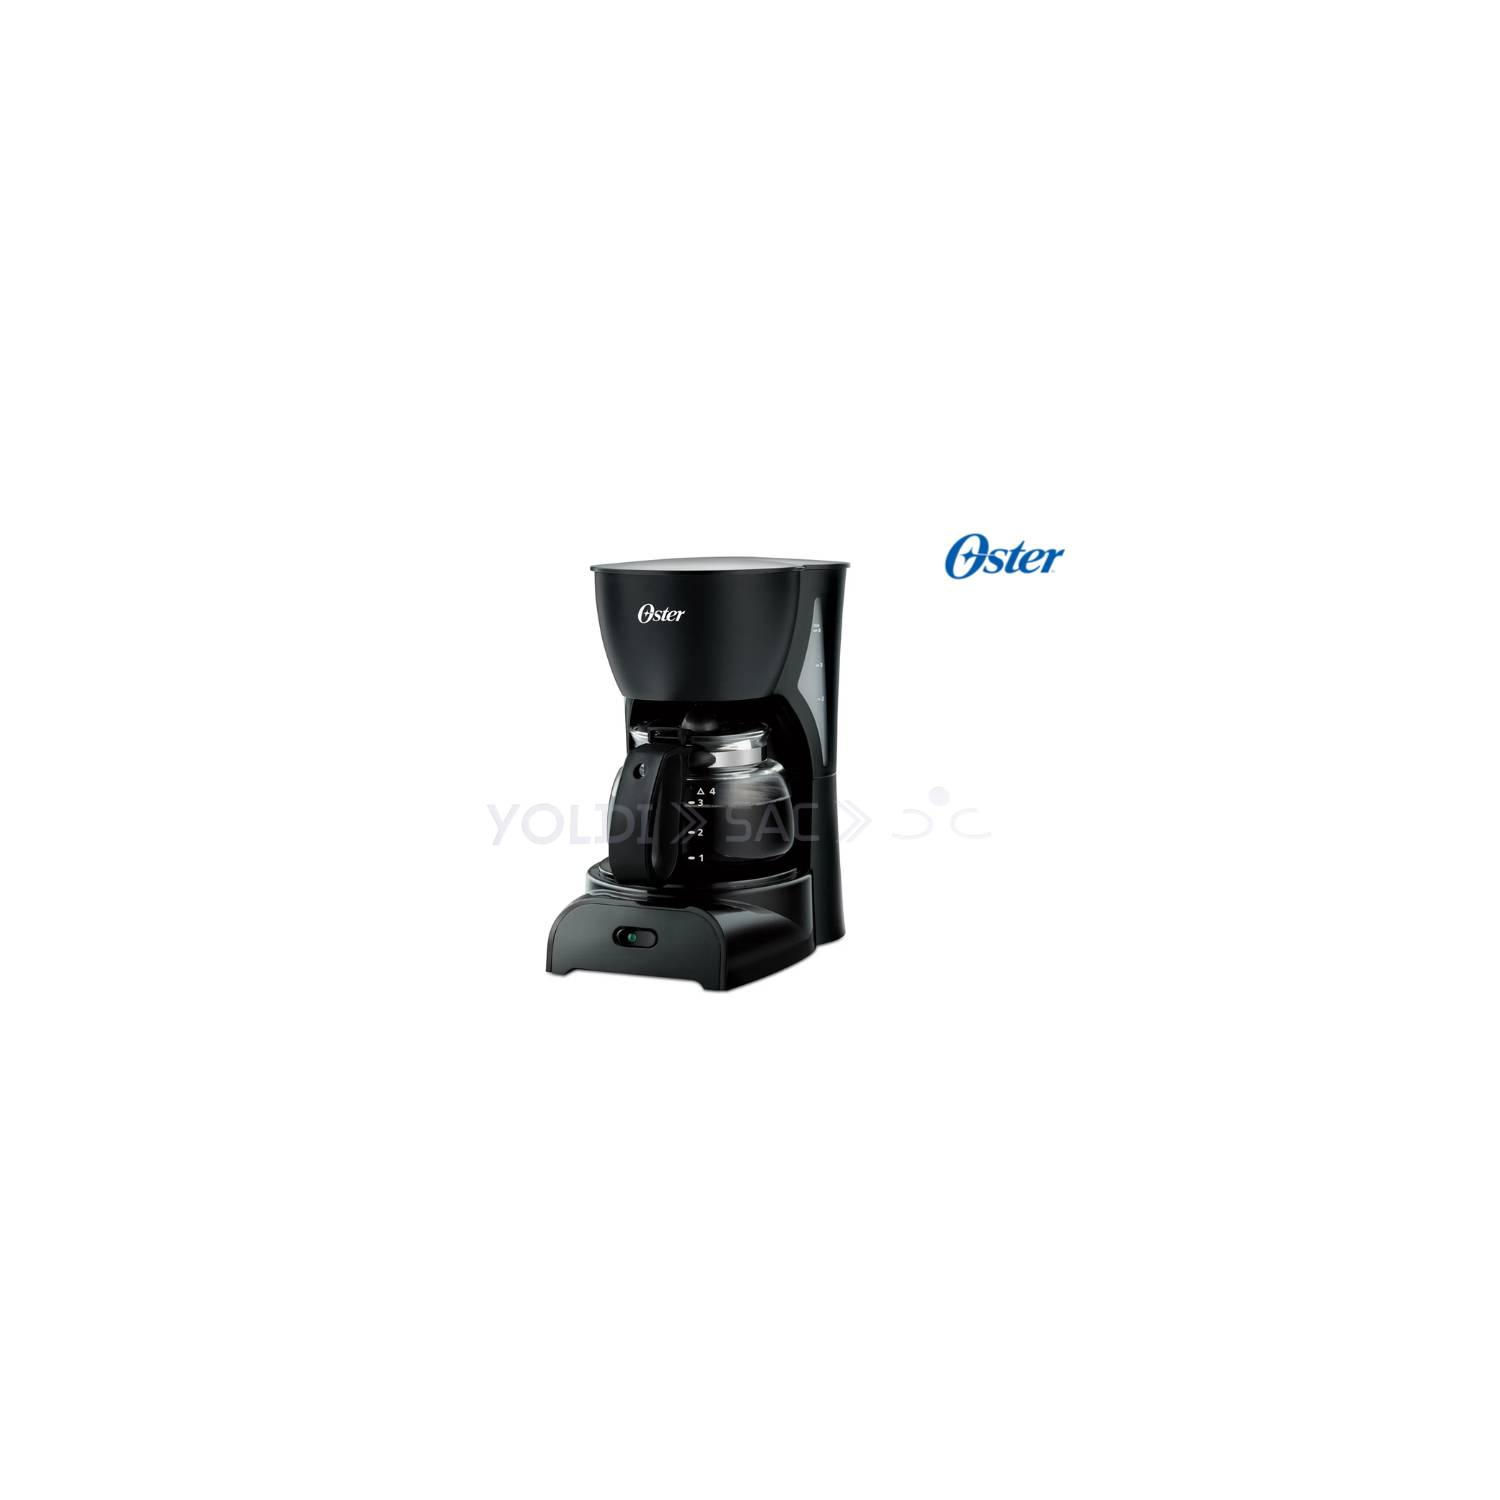 Cafetera Oster® negra de 4 tazas práctica y fácil de usar - Oster